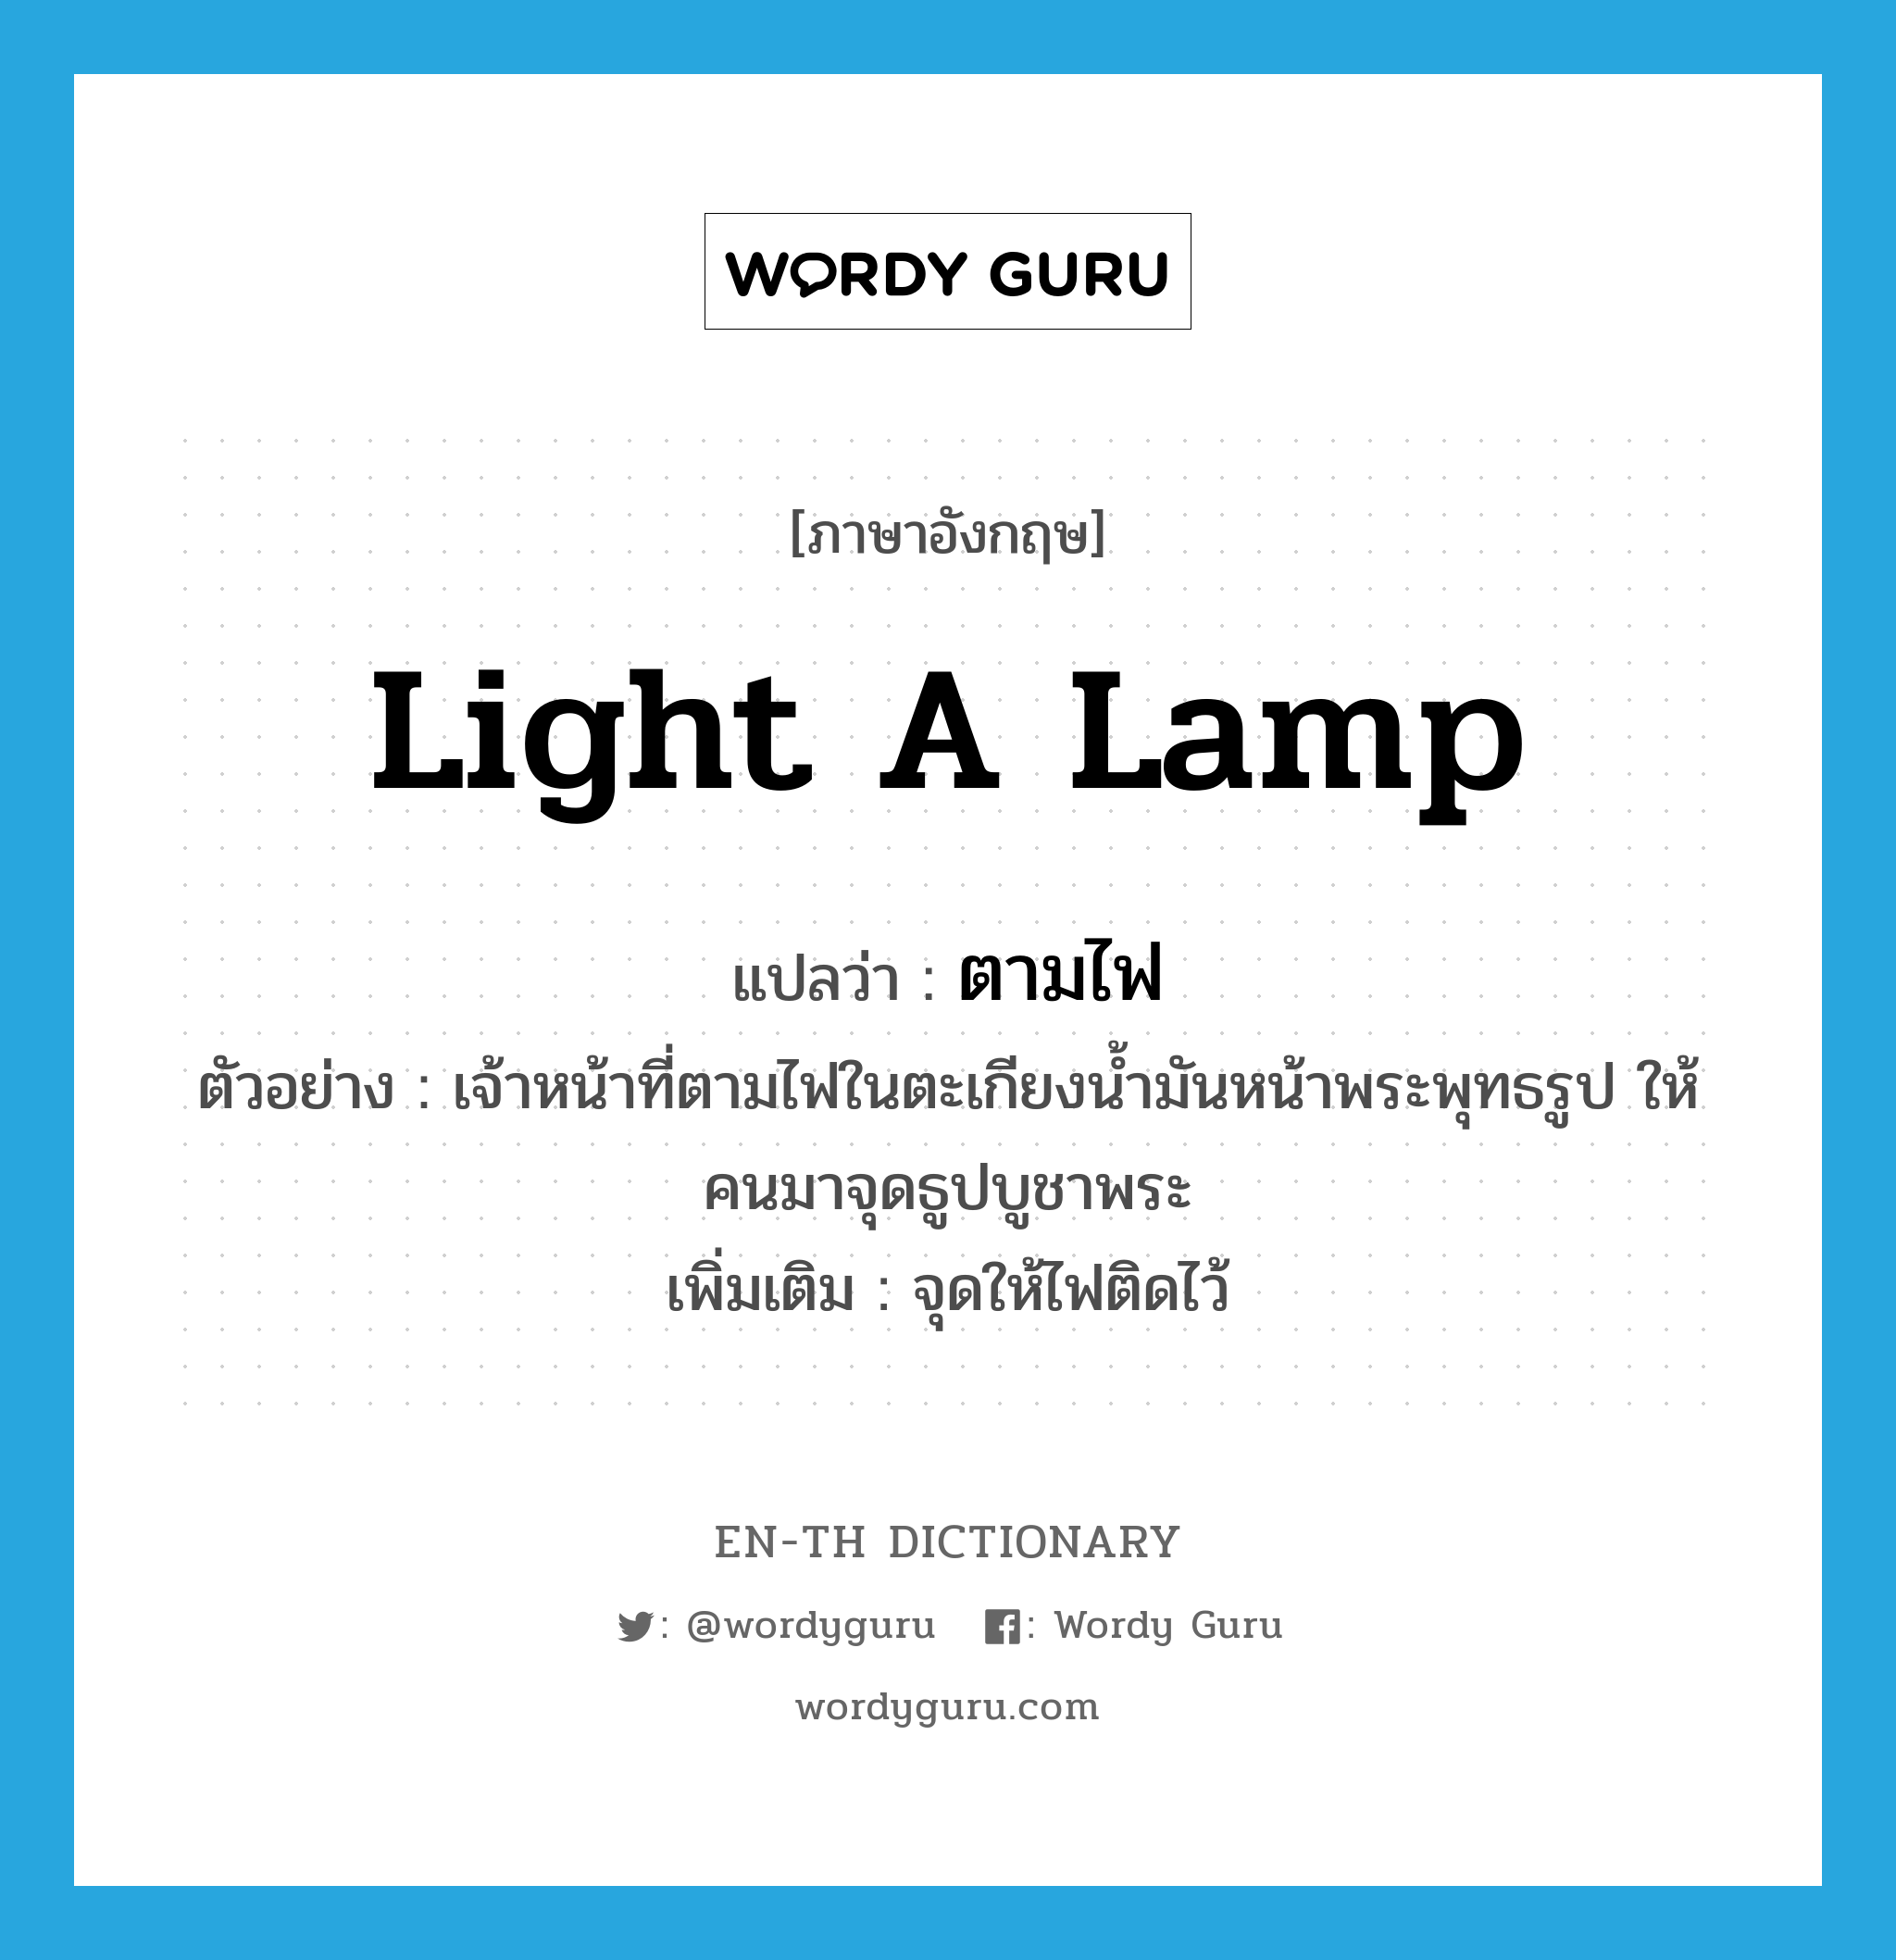 light a lamp แปลว่า?, คำศัพท์ภาษาอังกฤษ light a lamp แปลว่า ตามไฟ ประเภท V ตัวอย่าง เจ้าหน้าที่ตามไฟในตะเกียงน้ำมันหน้าพระพุทธรูป ให้คนมาจุดธูปบูชาพระ เพิ่มเติม จุดให้ไฟติดไว้ หมวด V